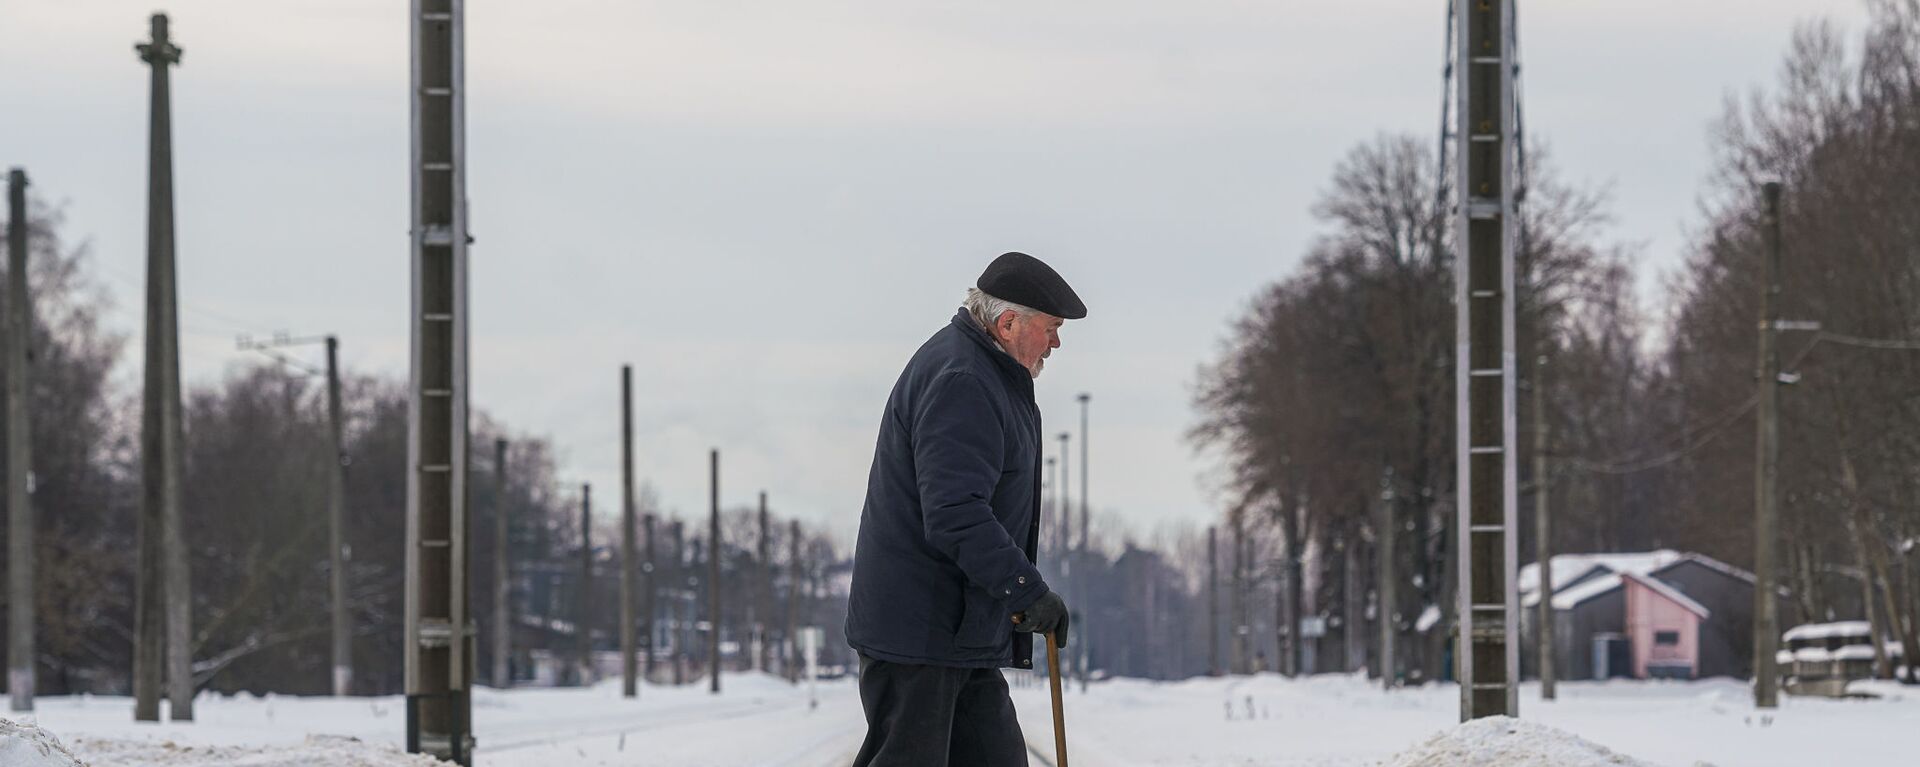 Пожилой мужчина переходит через железнодорожные пути - Sputnik Латвия, 1920, 10.02.2021